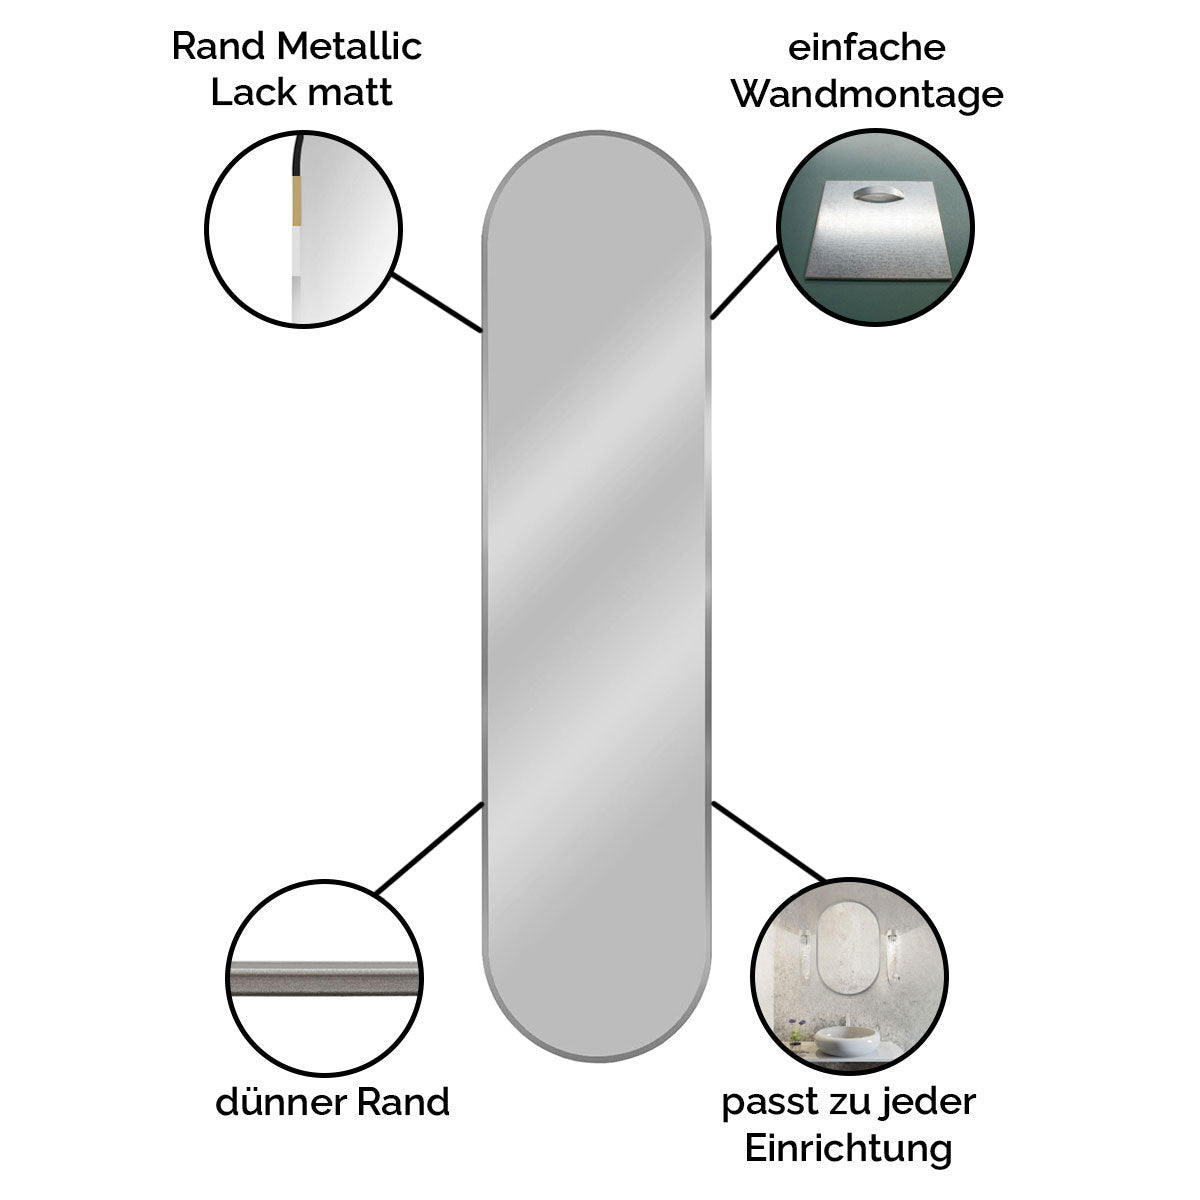 Spiegel pastillenförmig 'Pille' | in verschiedenen Größen | in verschiedenen Ausführungen | Manufactured in Europe